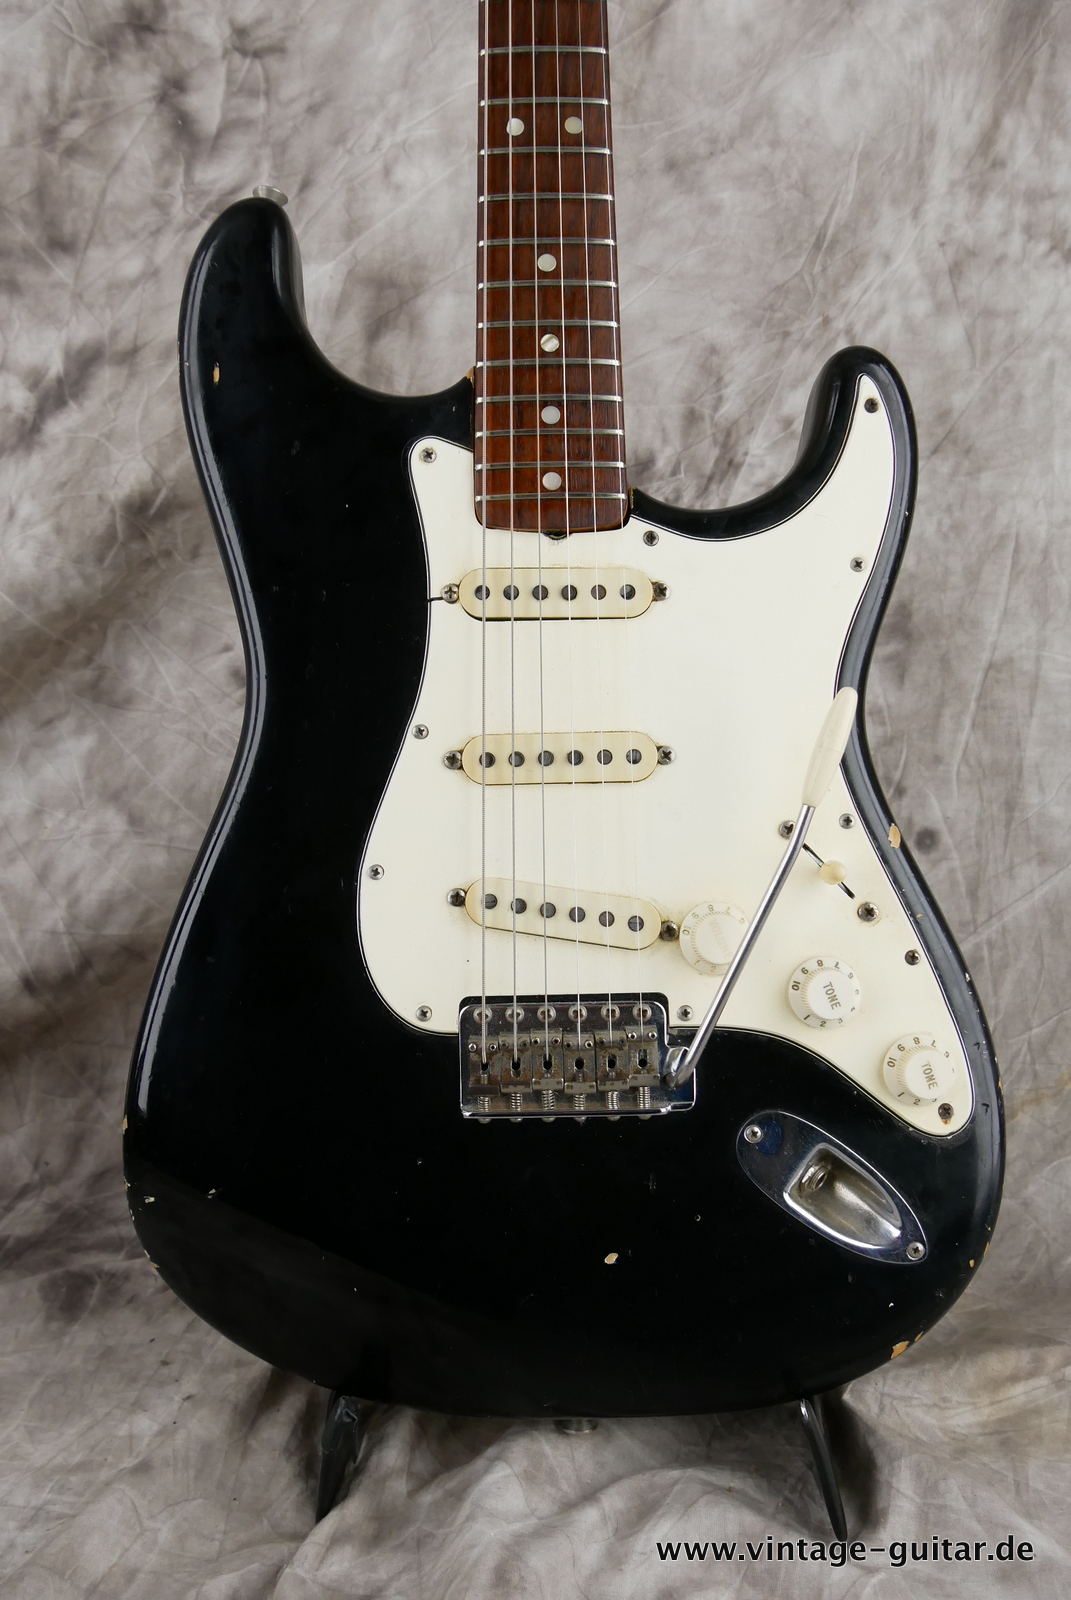 Fender-stratocaster-1969-black-002.JPG